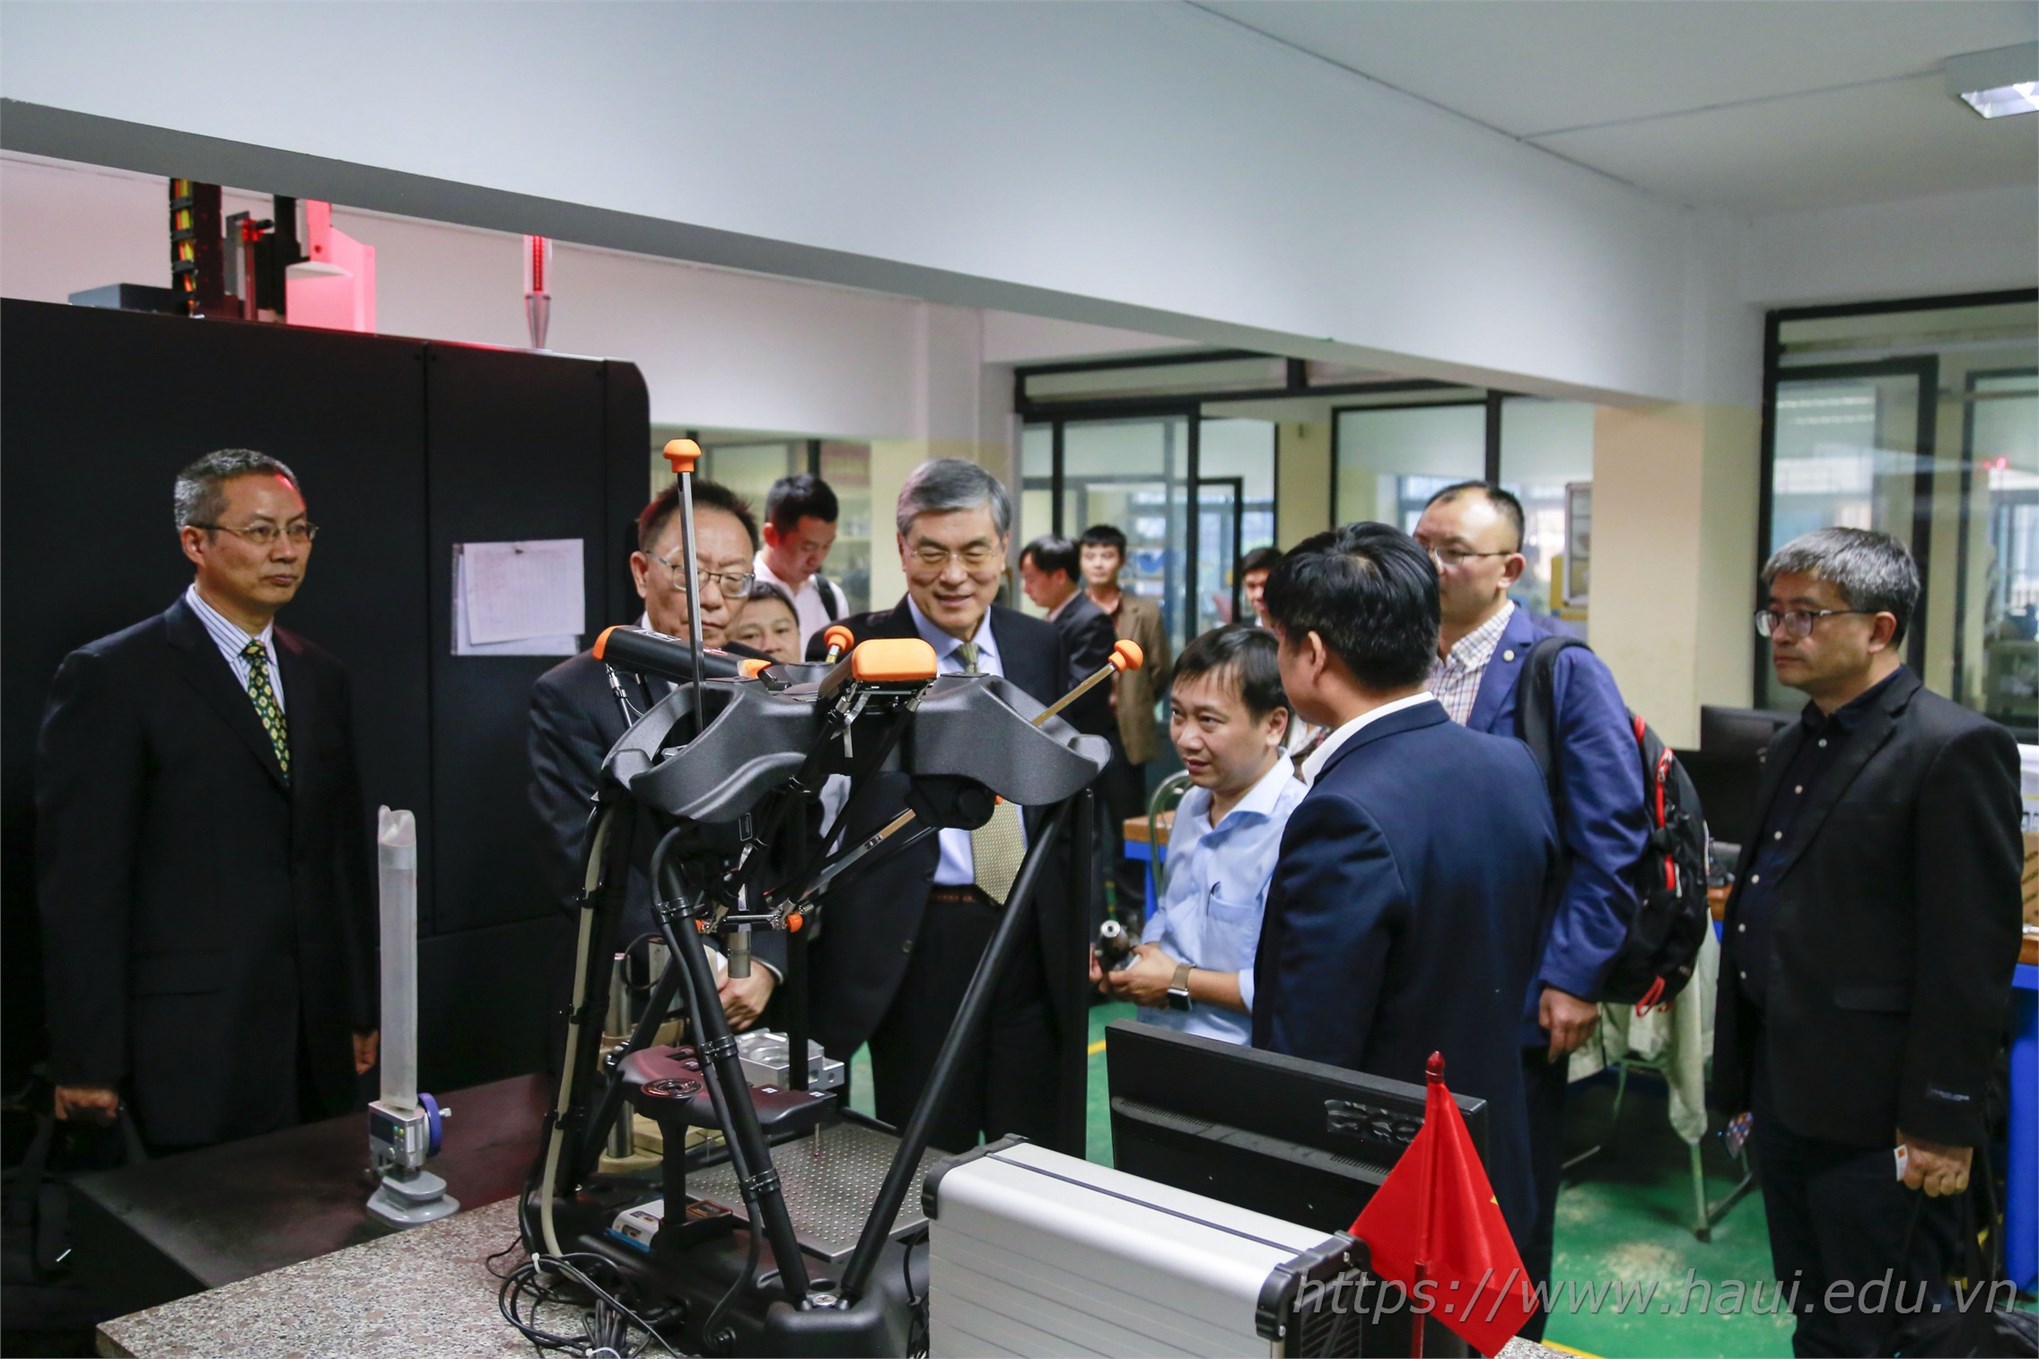 Khoa Cơ khí - Trường Đại học Công nghiệp Hà Nội tiên phong trong đào tạo ngành công nghệ kỹ thuật khuôn mẫu tại Việt Nam